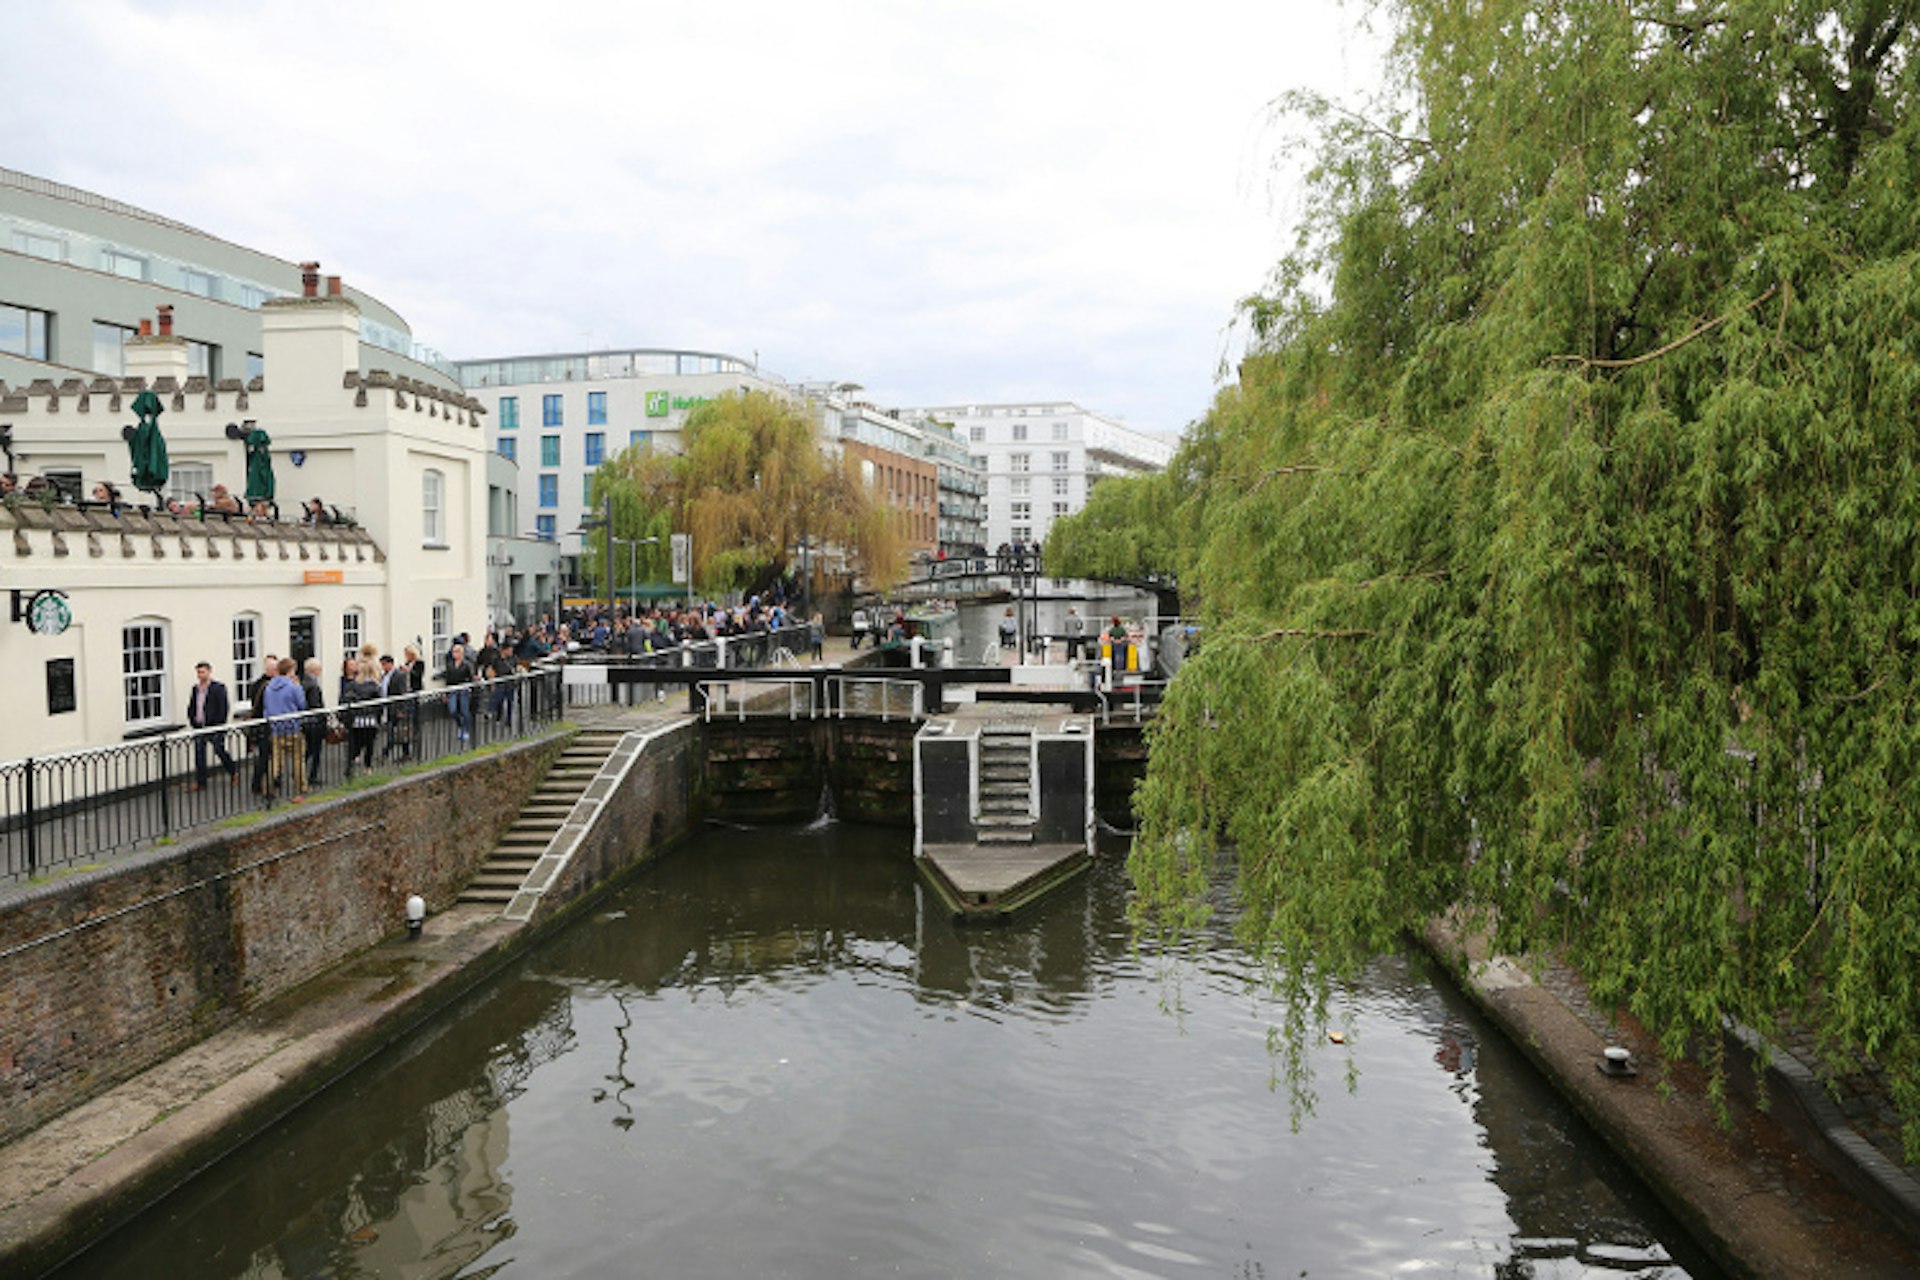 Camden Lock. Image by Mark Kent / CC BY-SA 2.0